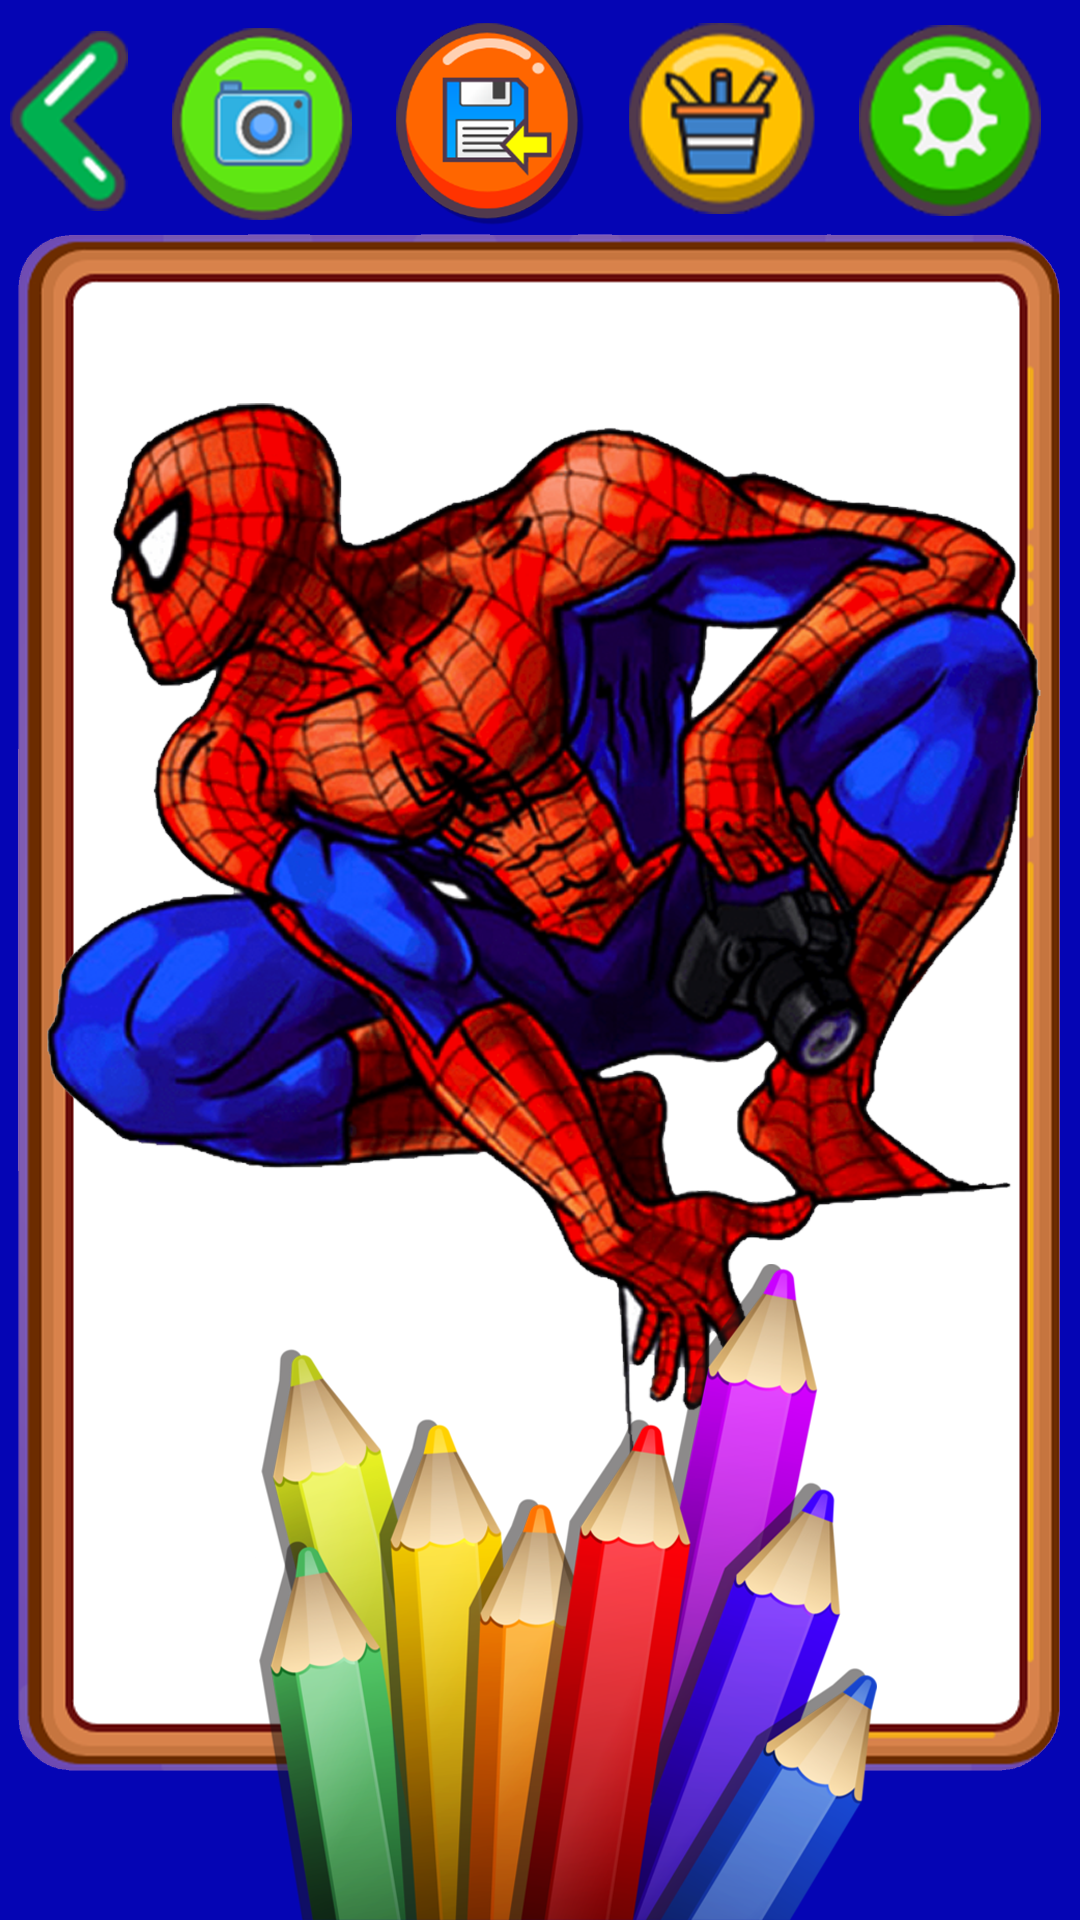 Vẽ và tô màu siêu nhân người nhện - Siêu nhân điện quang 2020 | Vẽ và tô màu  siêu nhân người nhện - Siêu nhân điện quang 2020 | By Vẽ Siêu NhânFacebook